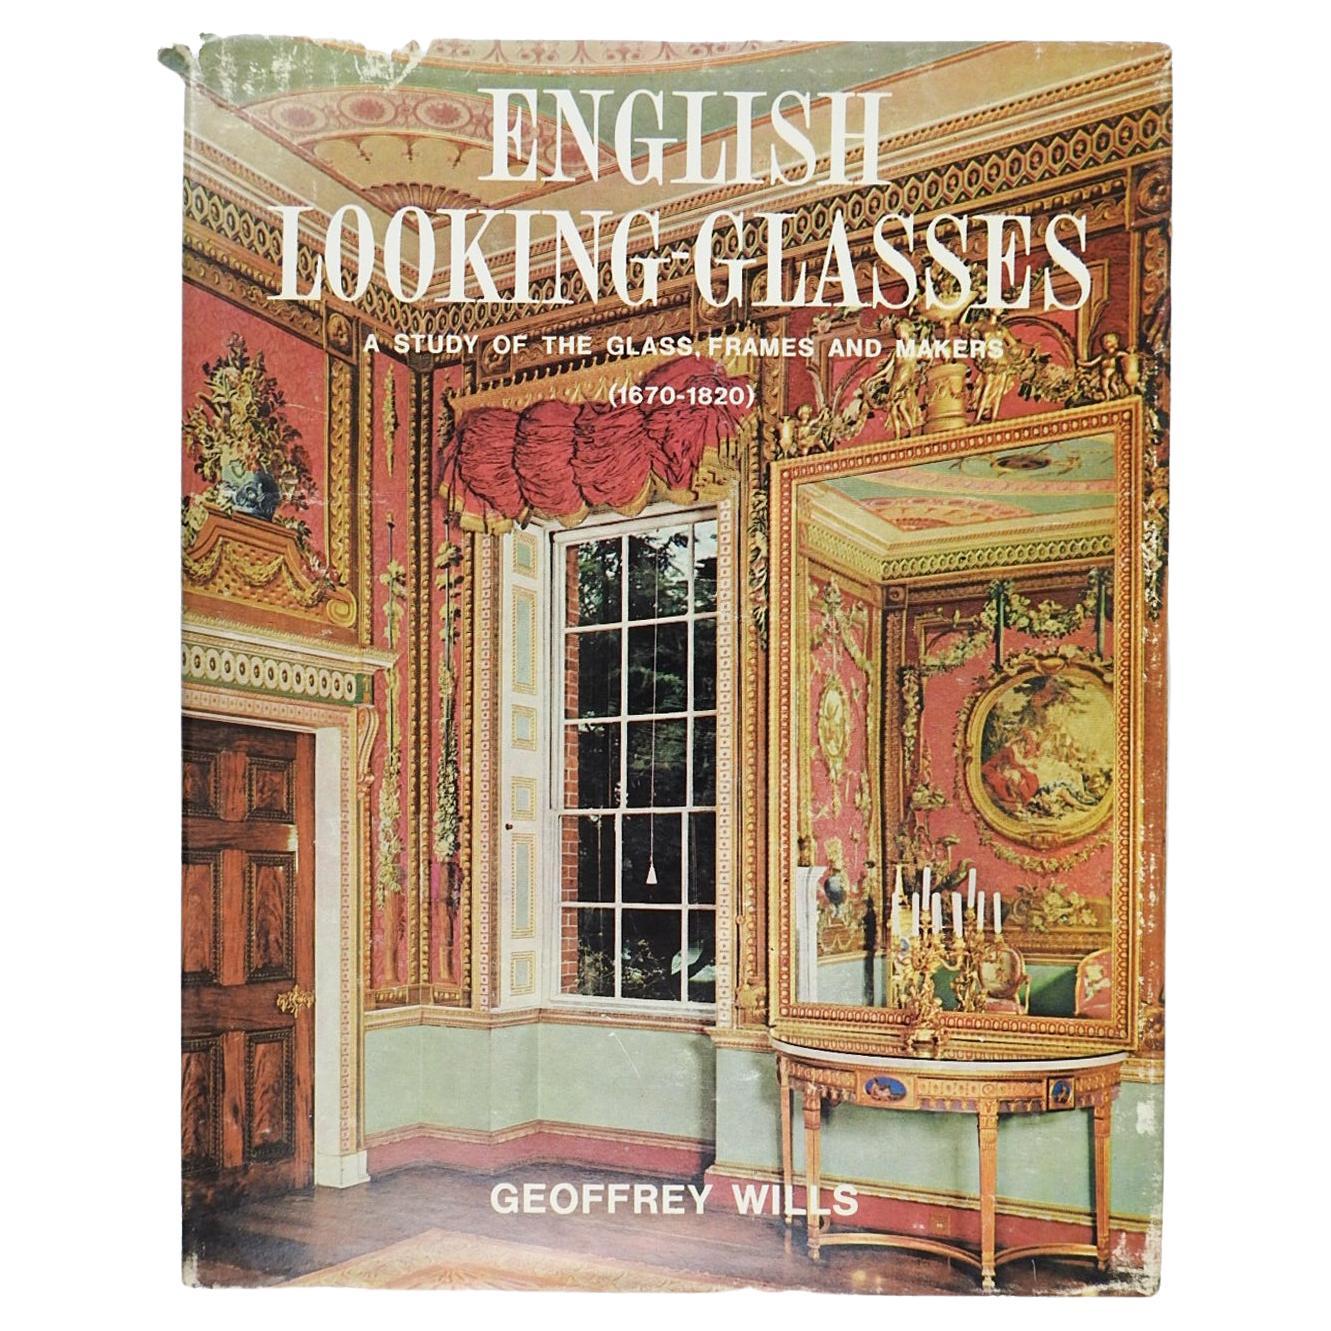 Lunettes anglaises une étude des montures de verre et des fabricants 1670-1820 Livre